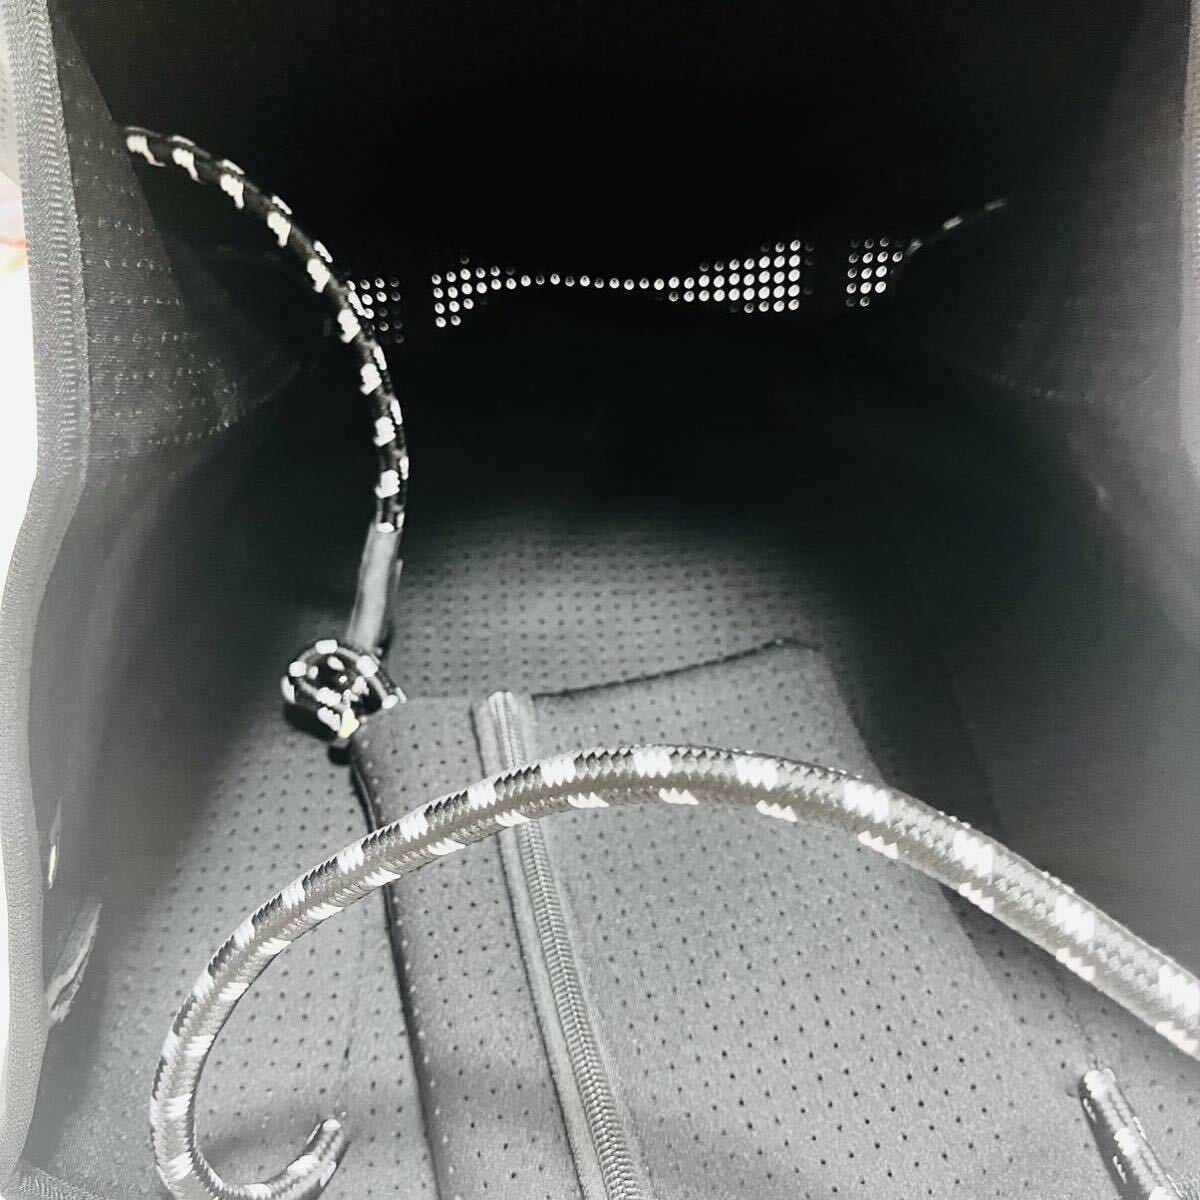 【送料無料】ネオプレーン トートバッグ 通勤 旅行 マザーズバッグ ポーチ付き 大容量 黒 レディーストートバッグ プール 海 学生 軽量